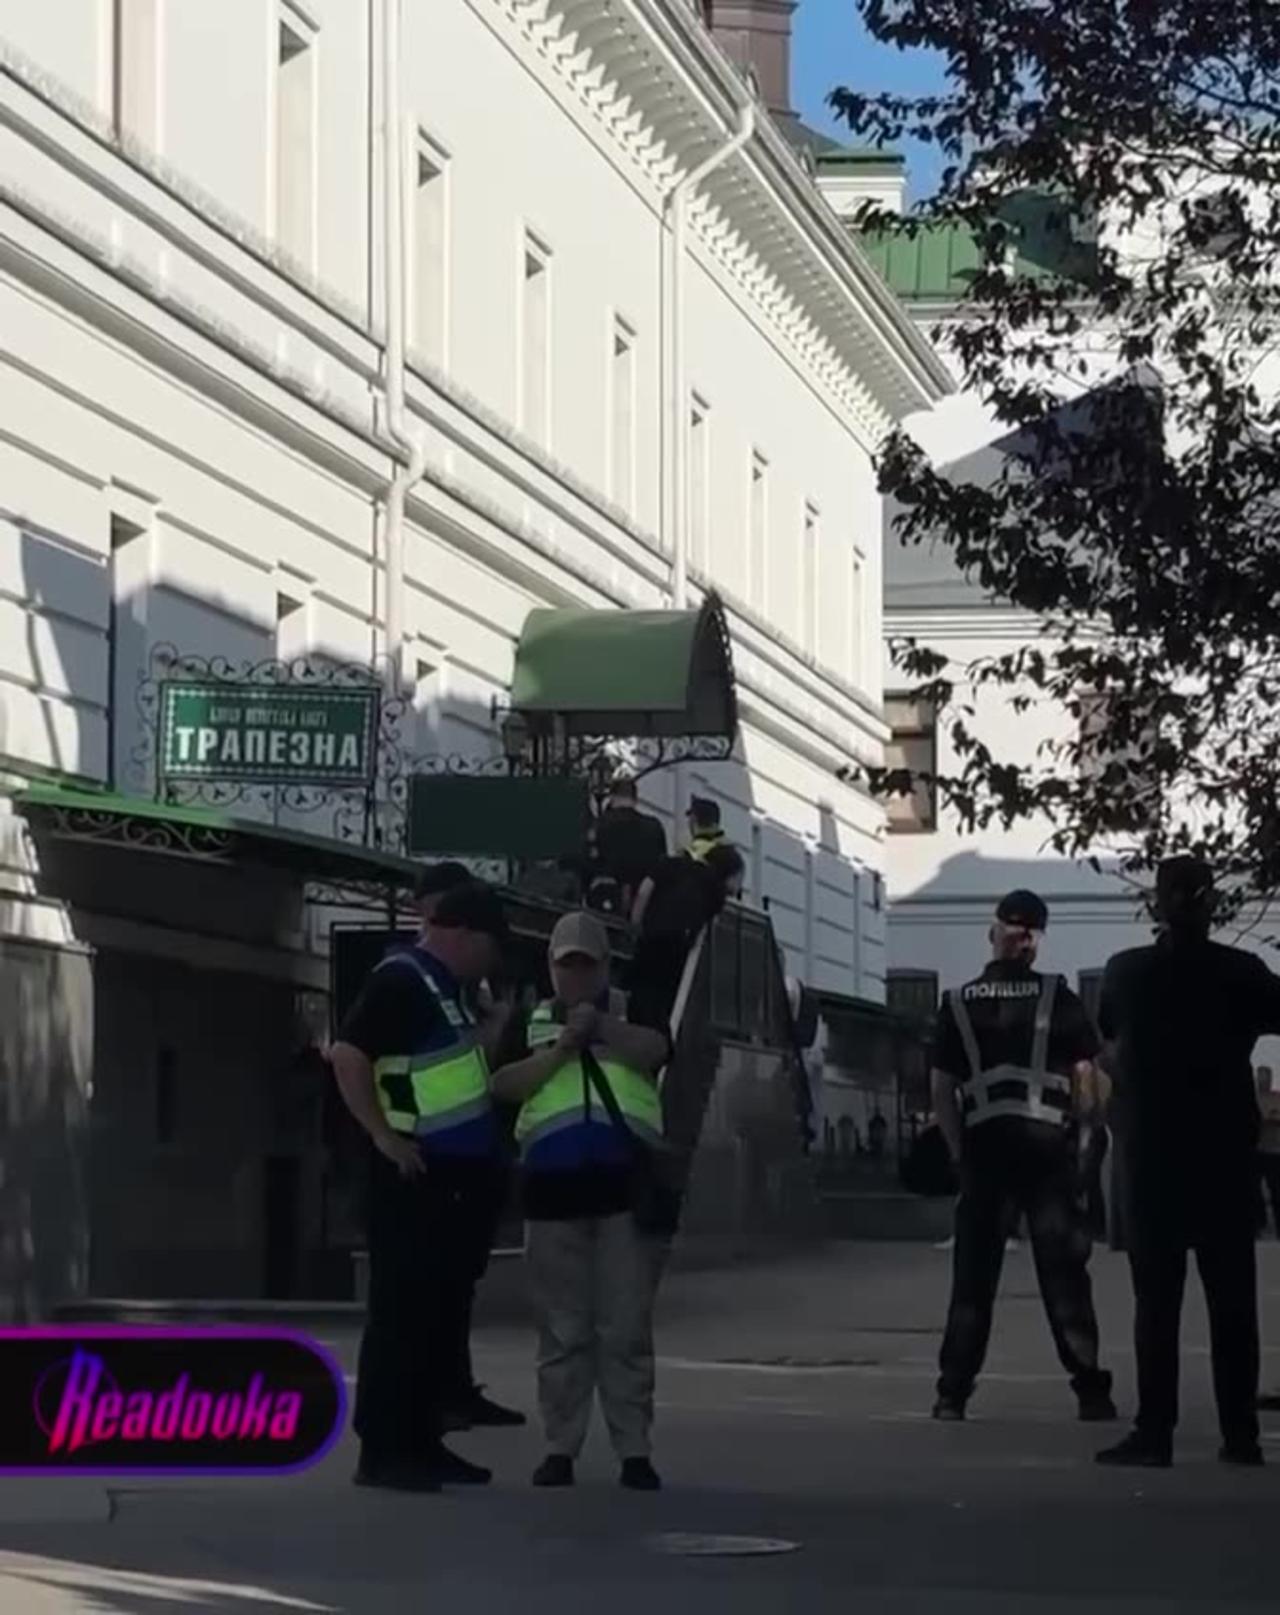 Ukrainian law enforcers armed with guns enter Kyiv Pechersk